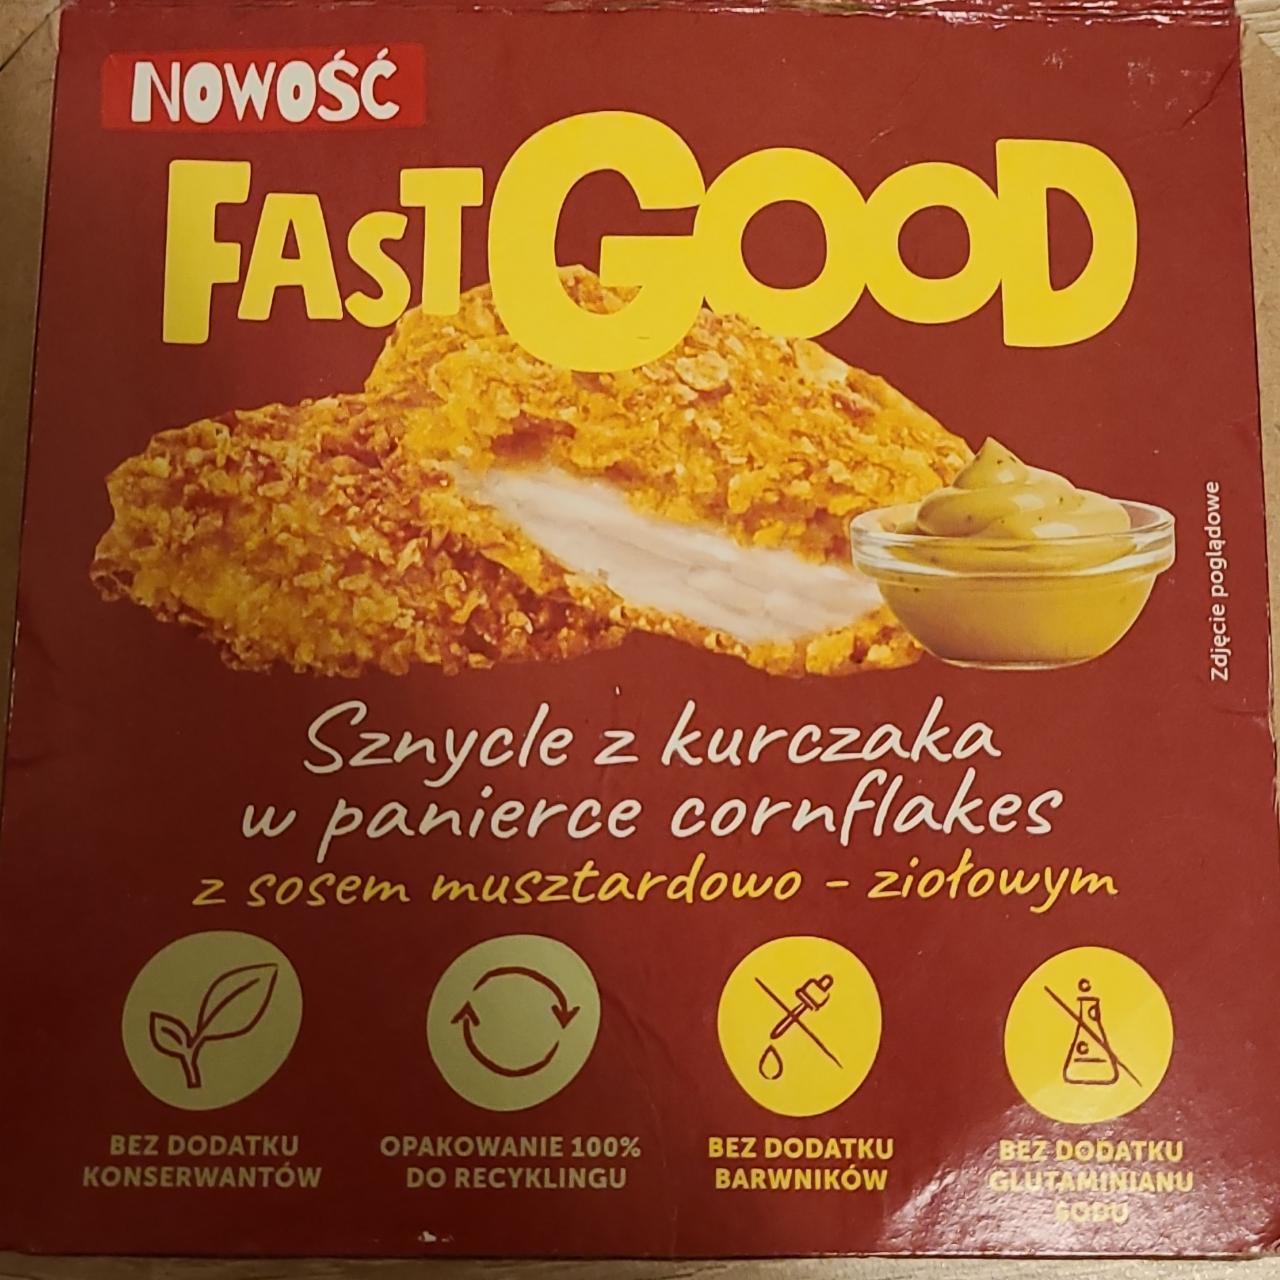 Zdjęcia - Sznycle z kurczaka w panierce cornflakes Fast Good